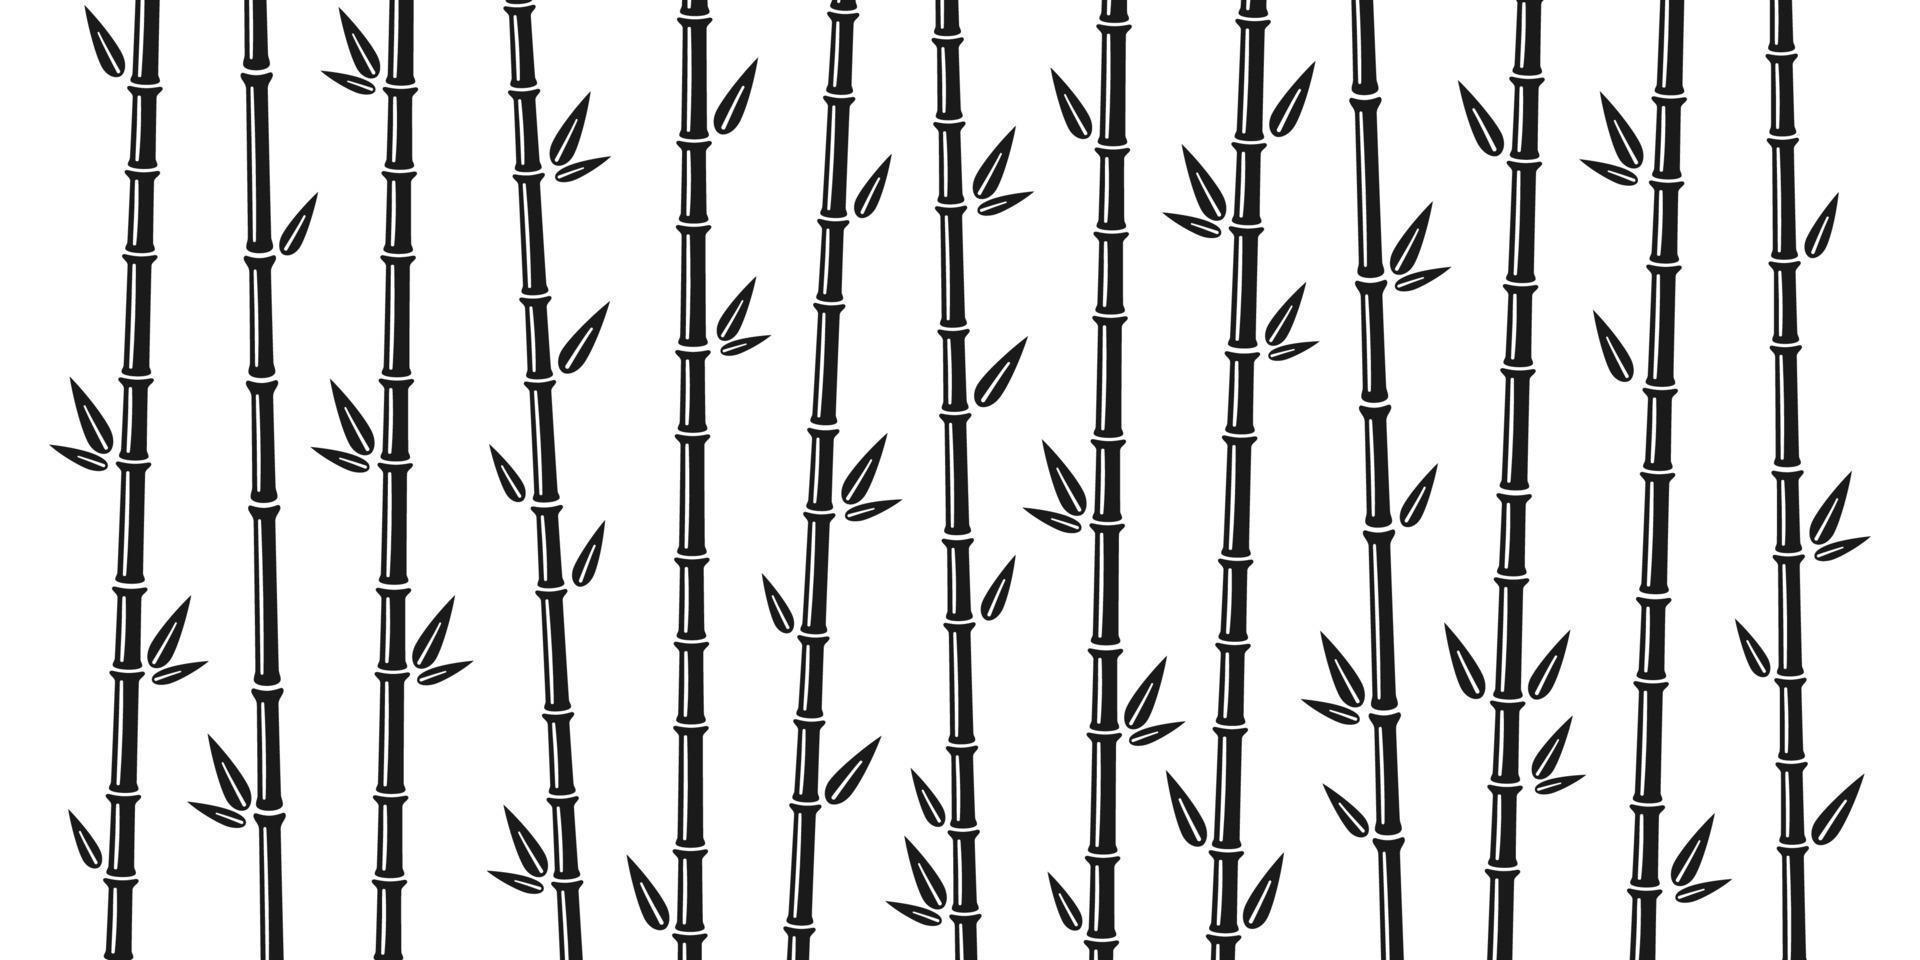 fond de bambou avec tige, branche et feuilles. conception de fond de bosquet de bambous. illustration vectorielle isolée dans un style plat sur fond blanc vecteur